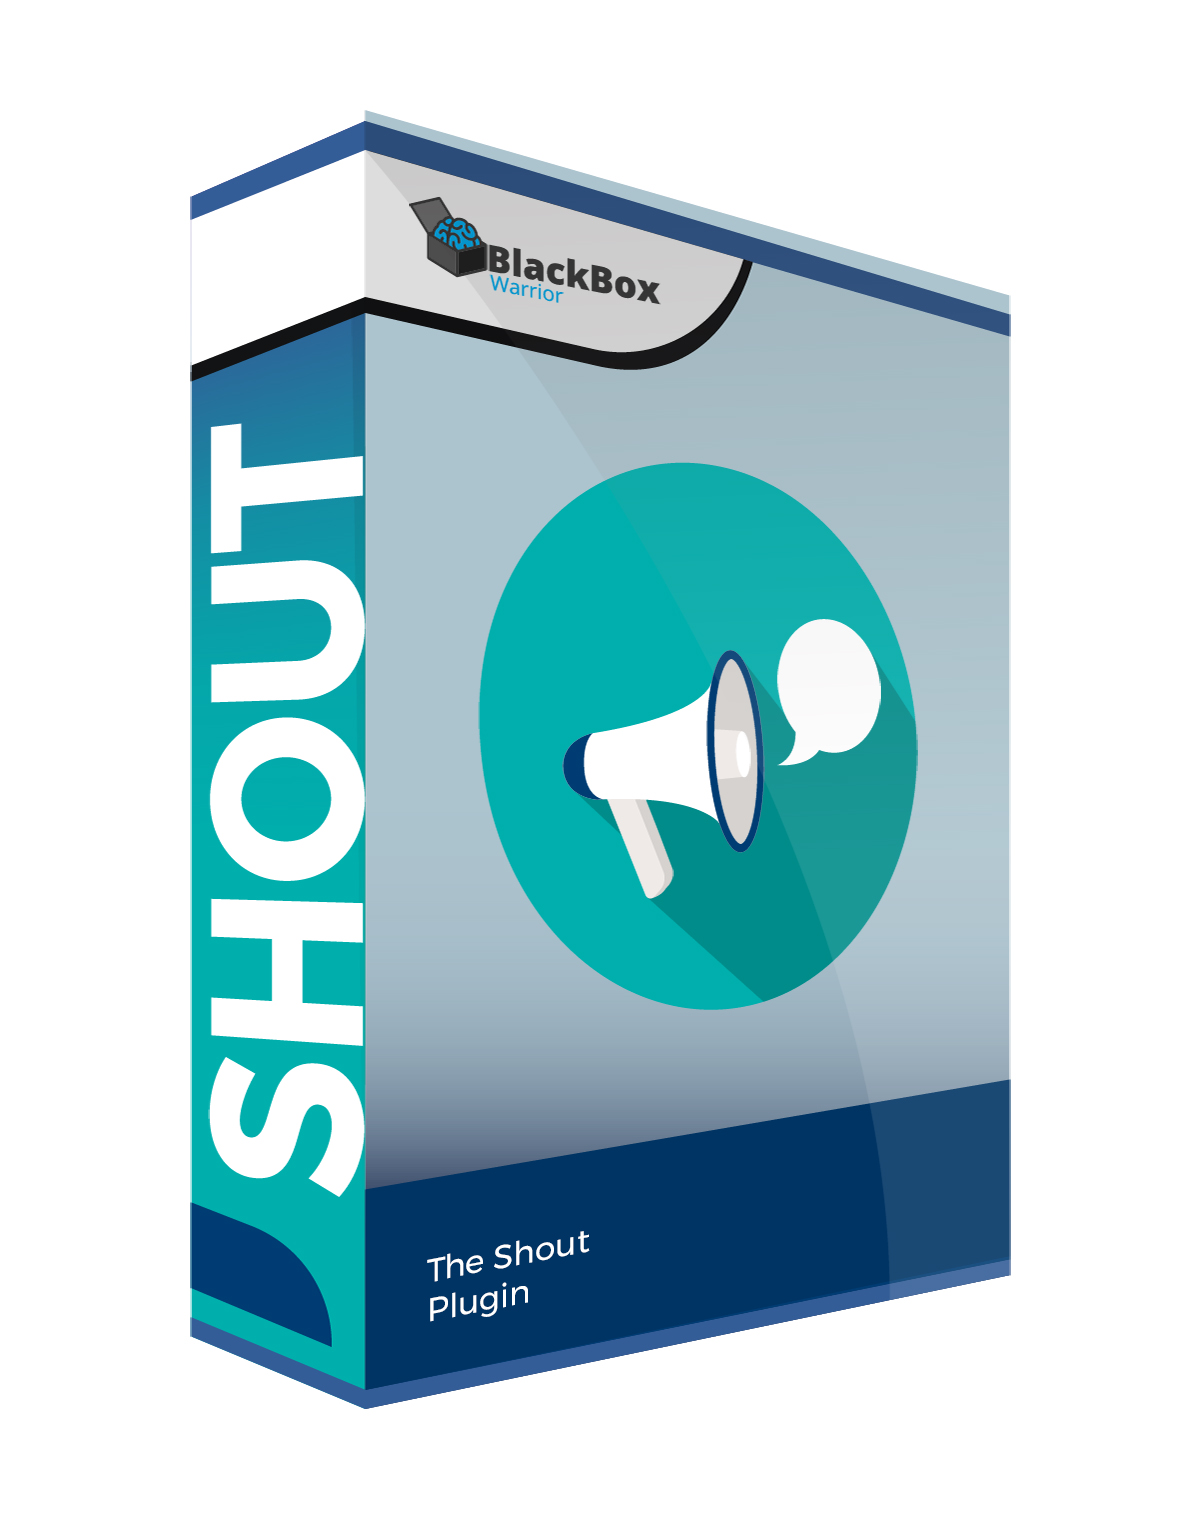 shout